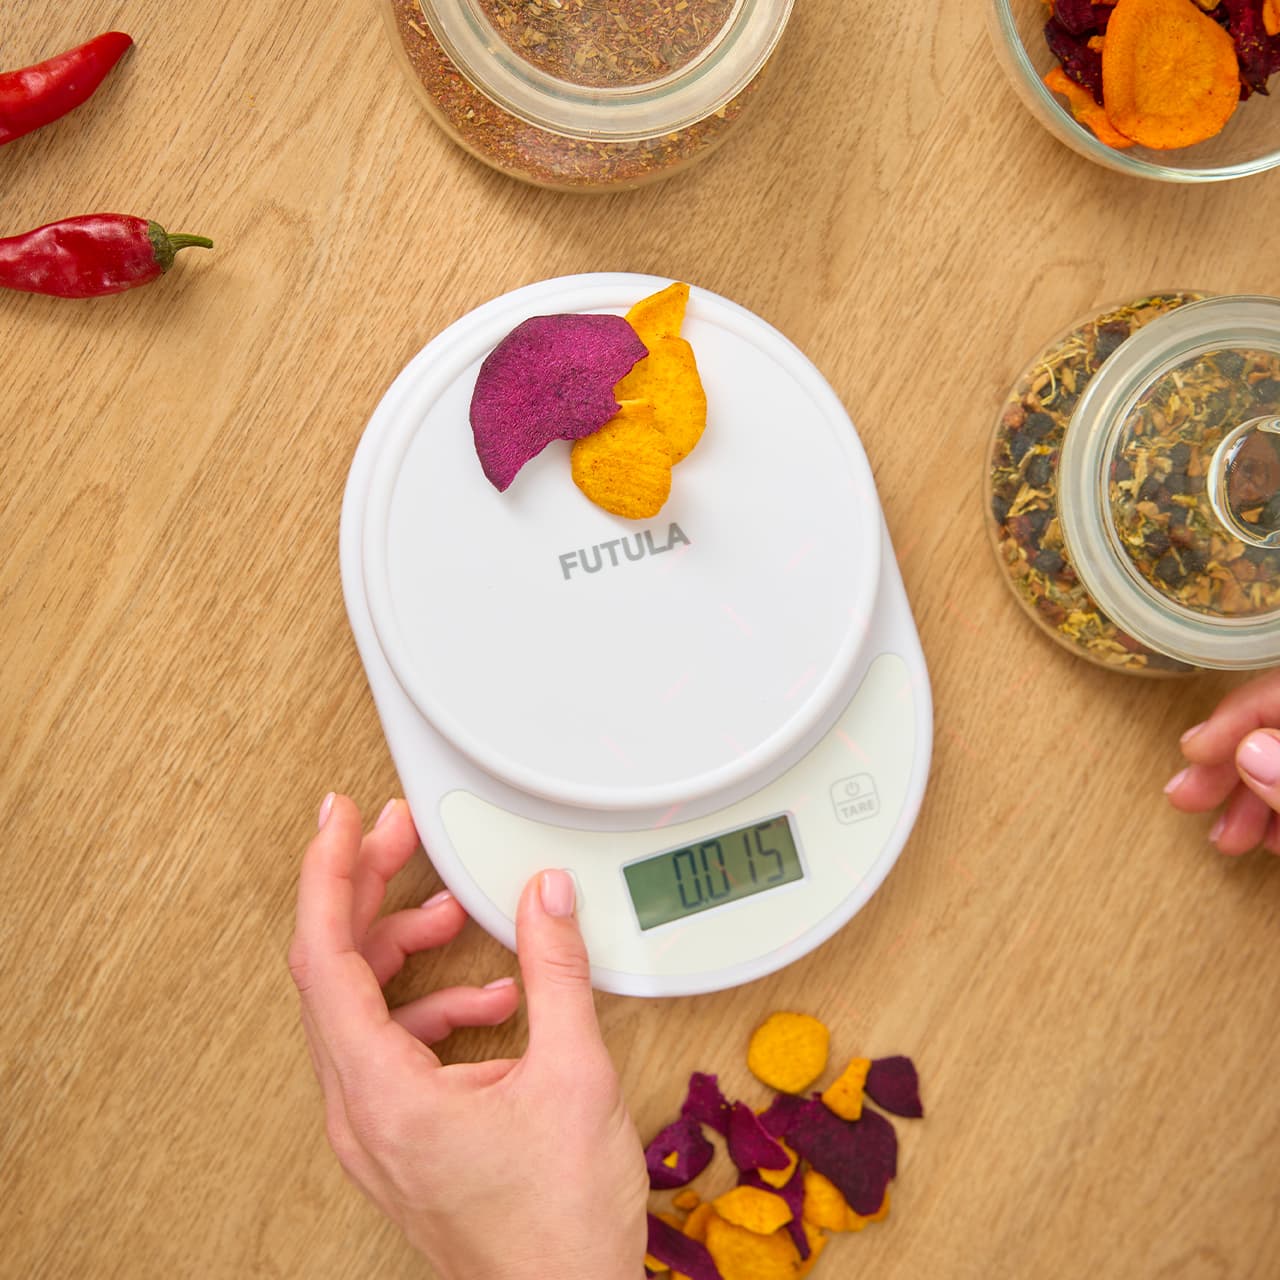 Futula Kitchen Scale 1 способны измерять вес до 5 килограммов с точностью до 0,1 грамма